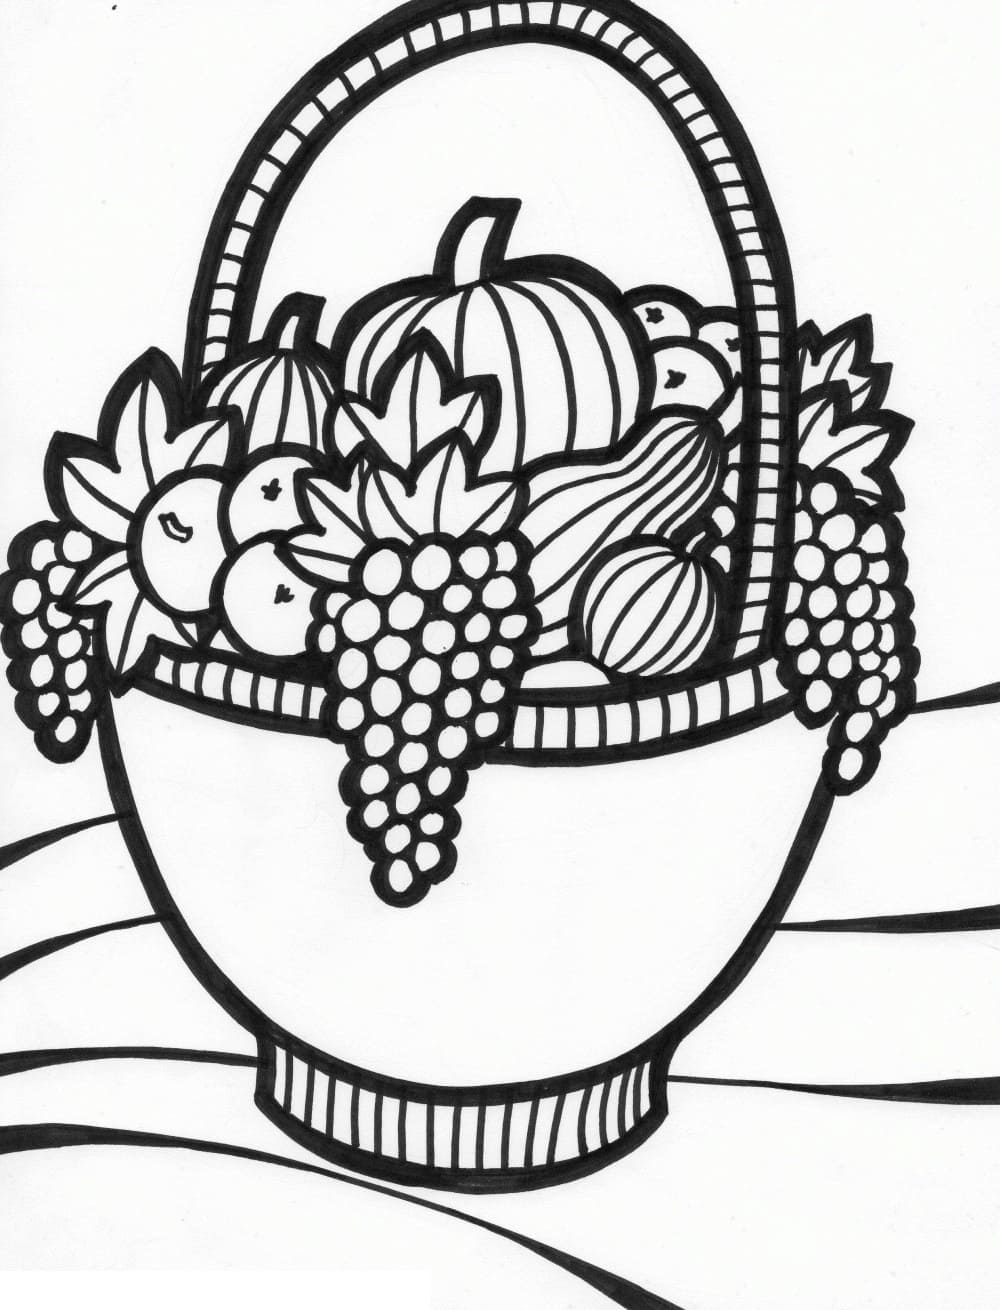 Fruit Basket (Pencil Shading) by SKRthecreator12 on DeviantArt